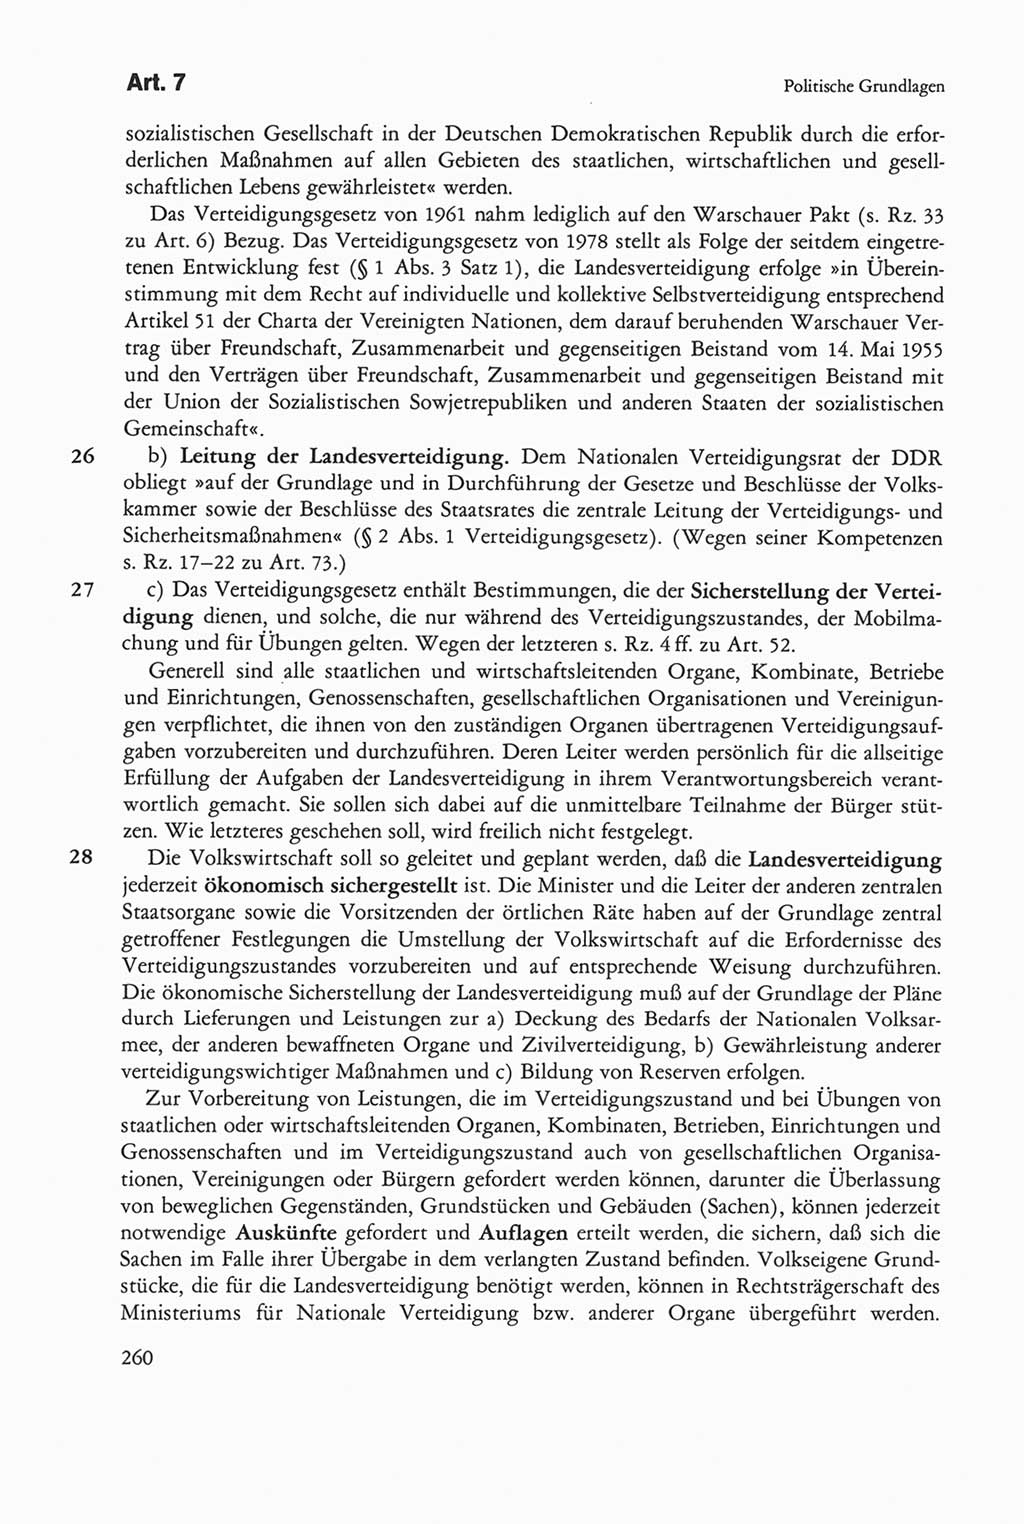 Die sozialistische Verfassung der Deutschen Demokratischen Republik (DDR), Kommentar 1982, Seite 260 (Soz. Verf. DDR Komm. 1982, S. 260)